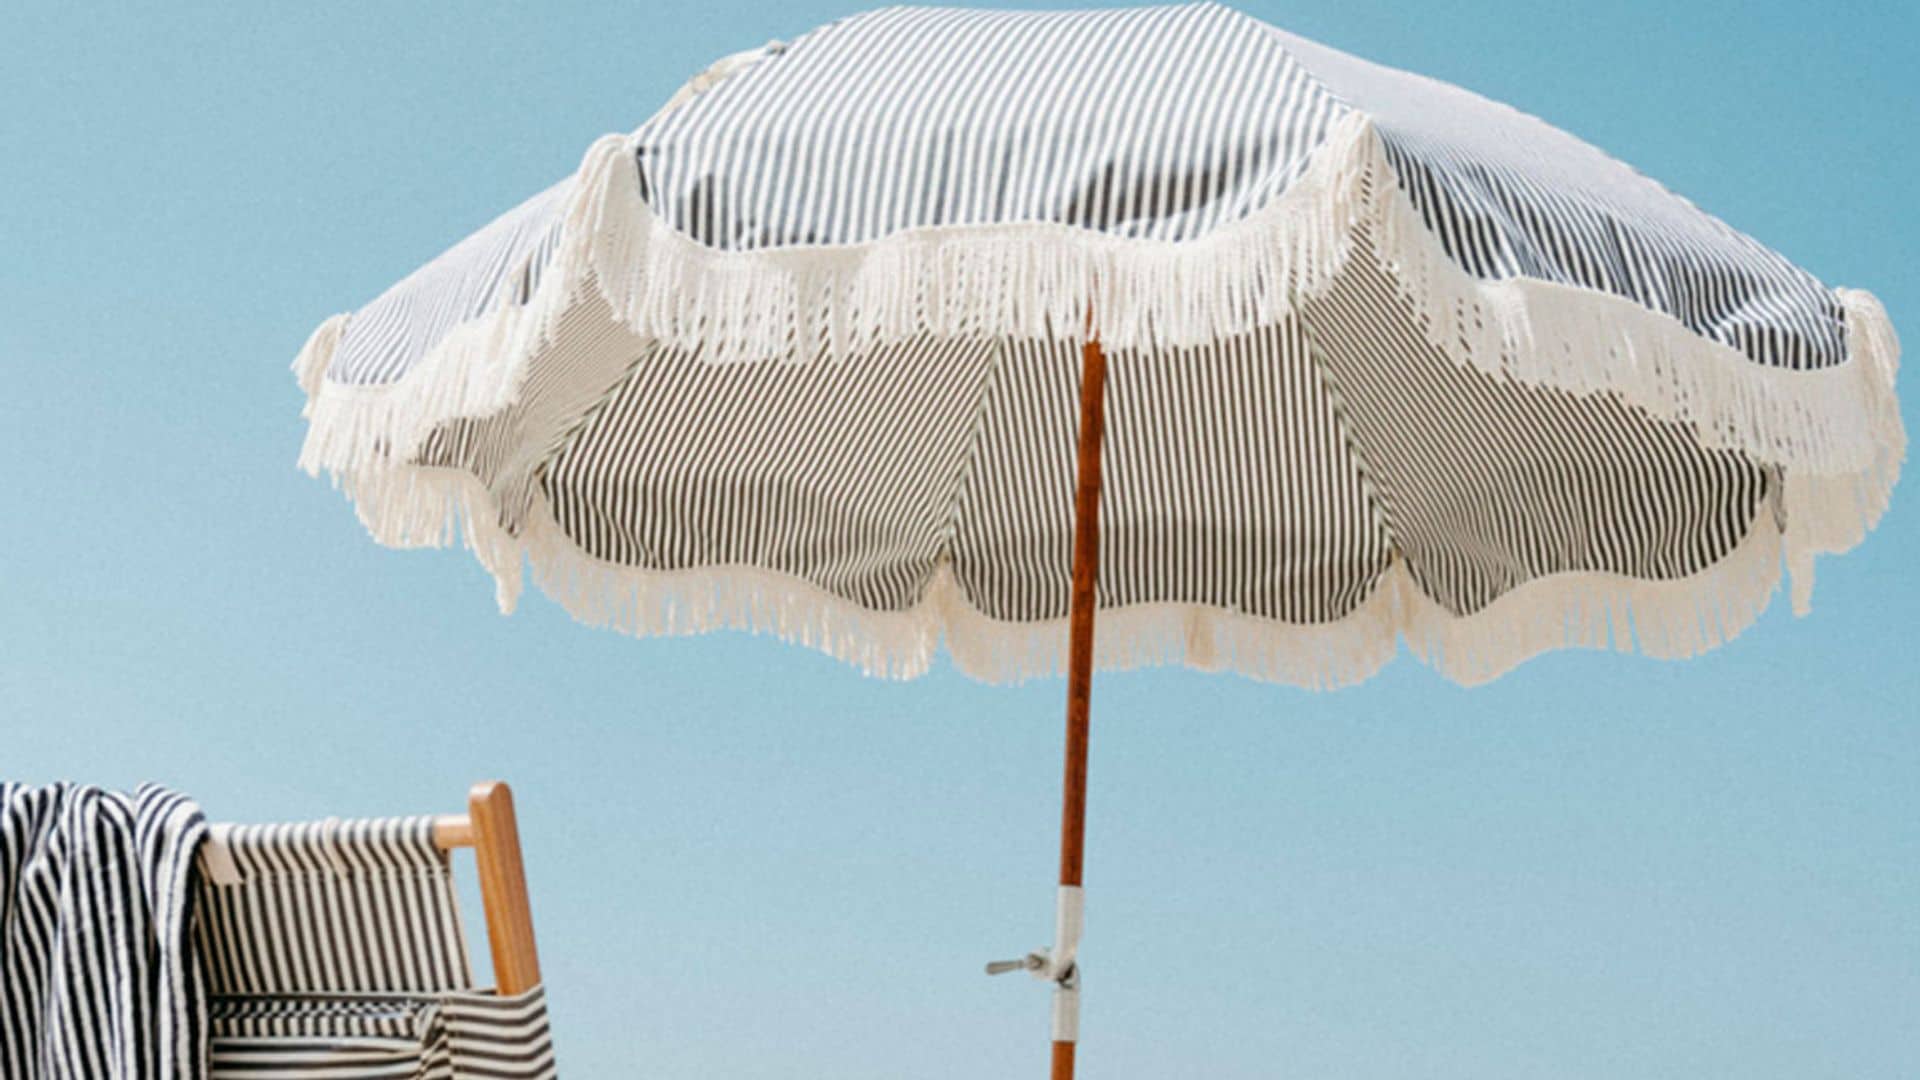 Protégete del sol con las sombrillas de playa más prácticas y bonitas